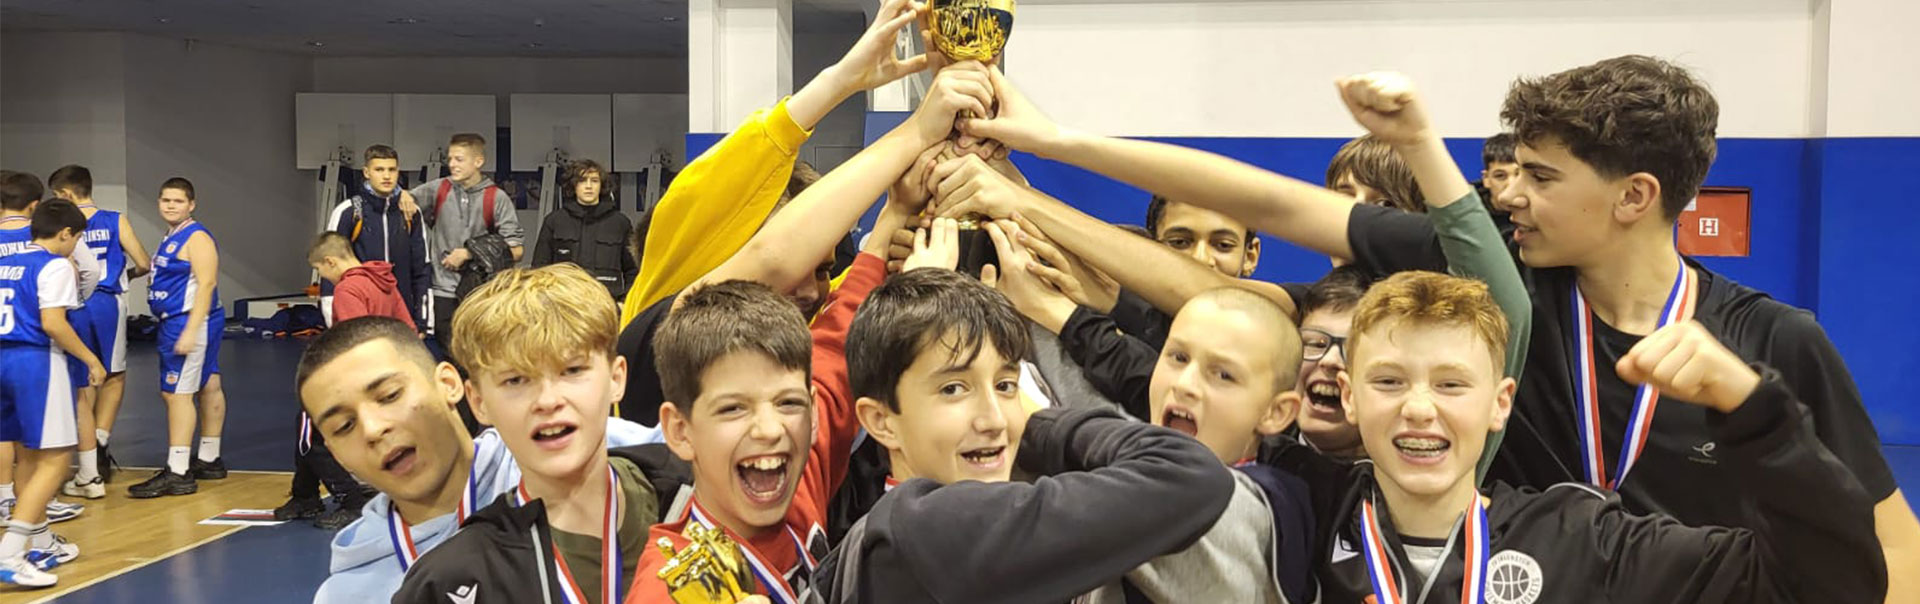 Das Team der Alpen Academy freut sich über den zweiten Platz beim Turnier in Belgrad. Credits: Chiemgau Baskets